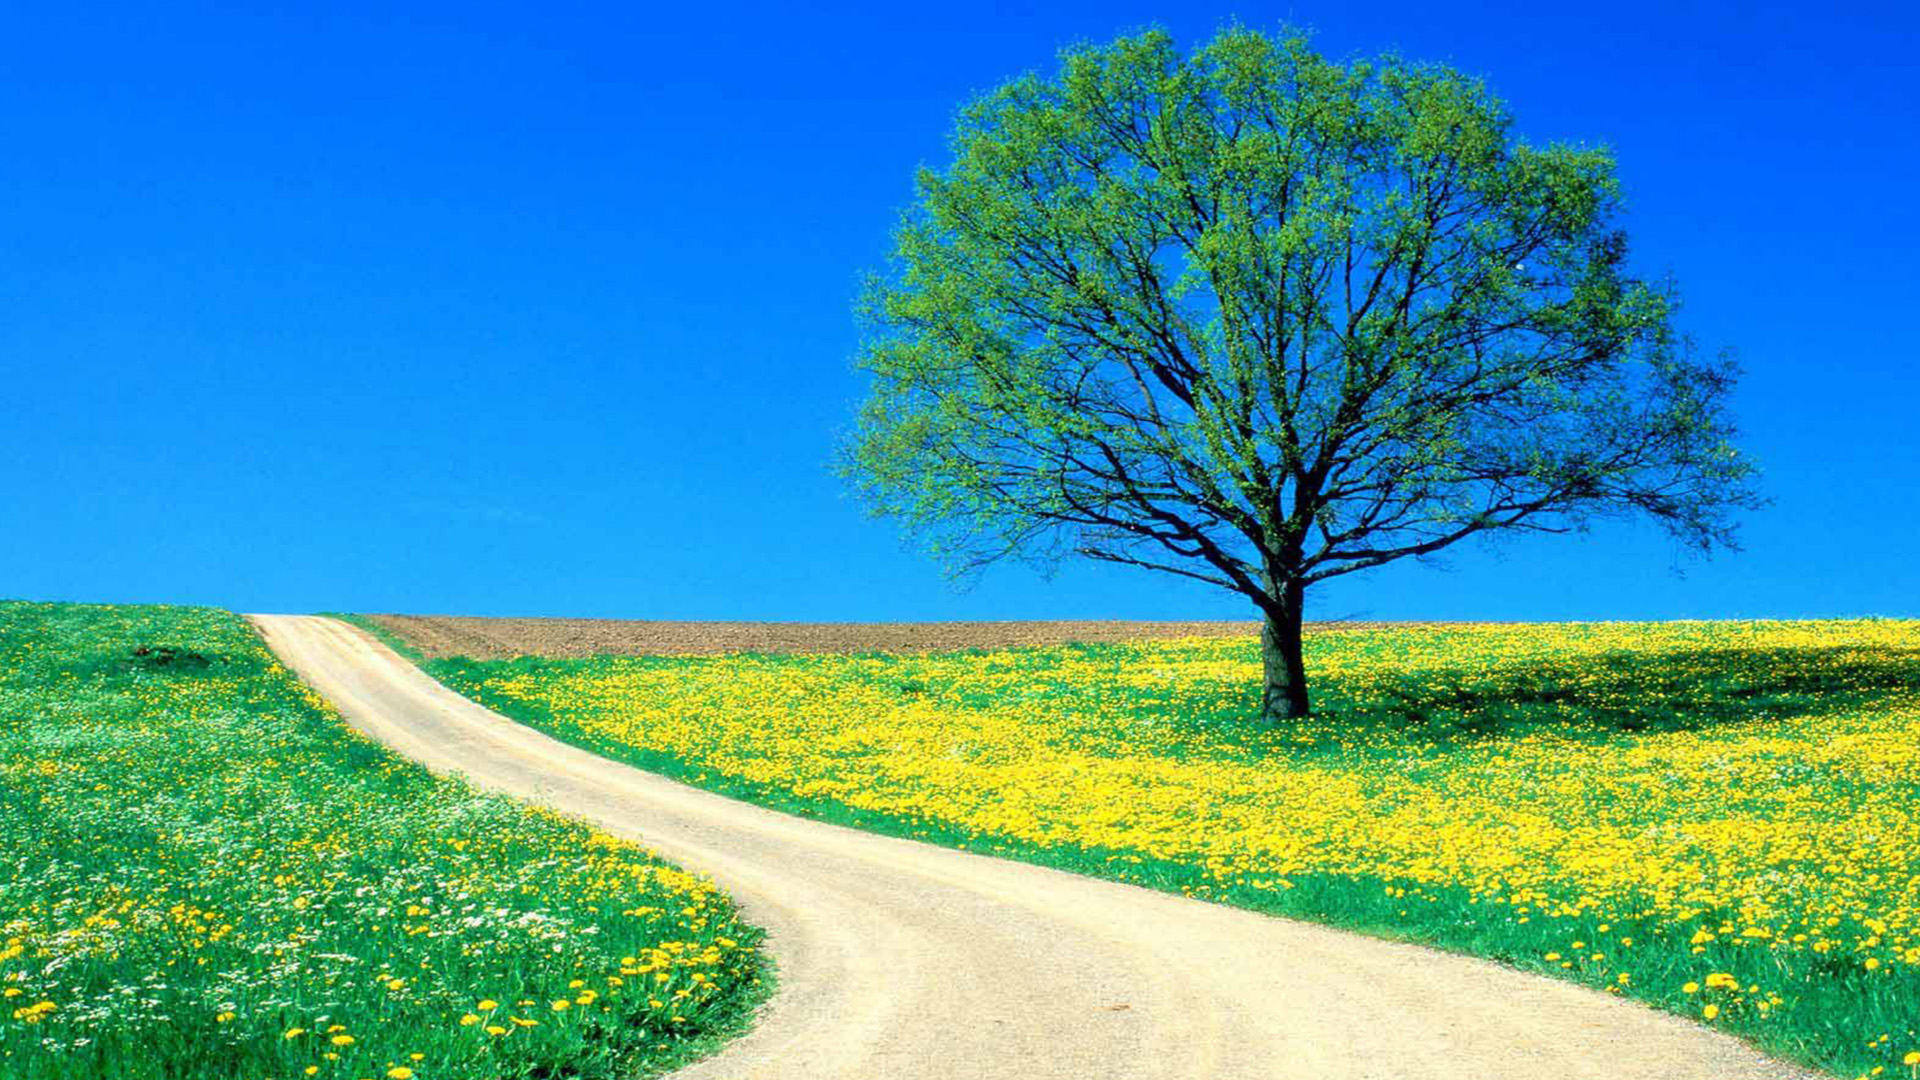 50 Hình nền cây xanh cực đẹp  Ảnh đẹp thiên nhiên